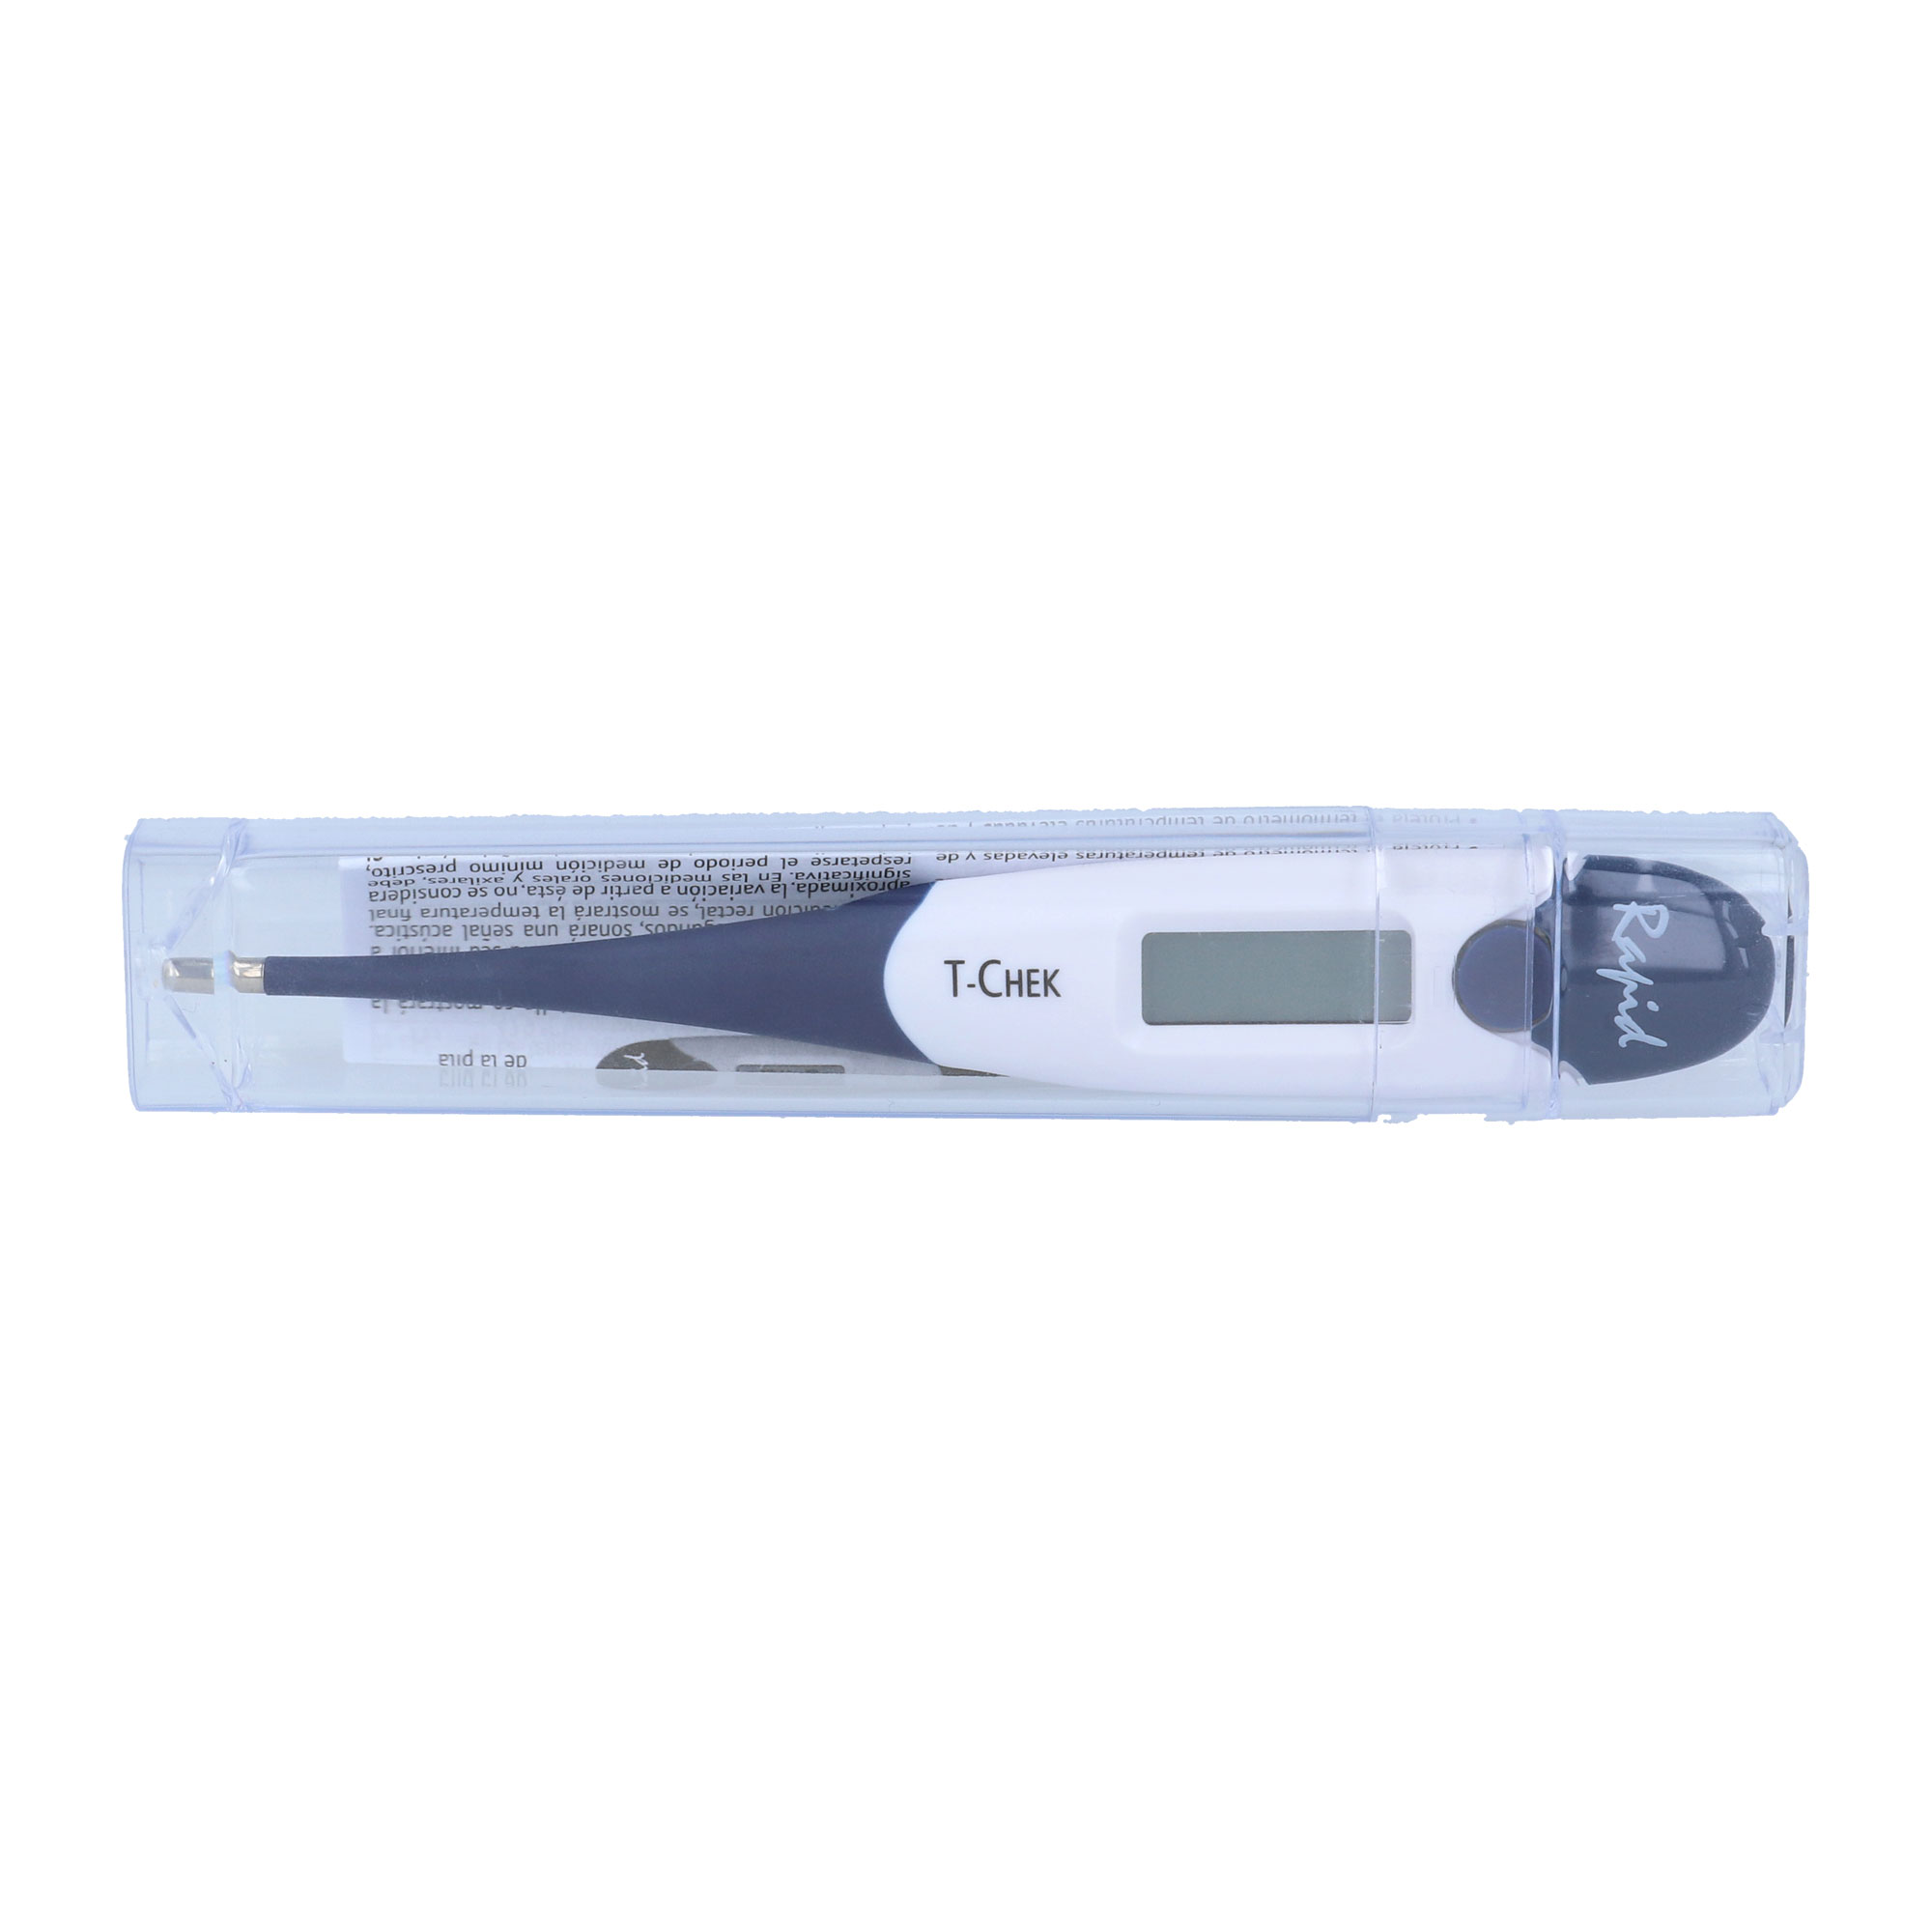 Digitales Fieberthermometer zur oralen, rektalen oder axillaren Selbstmessung der menschlichen Körpertemperatur in °C.